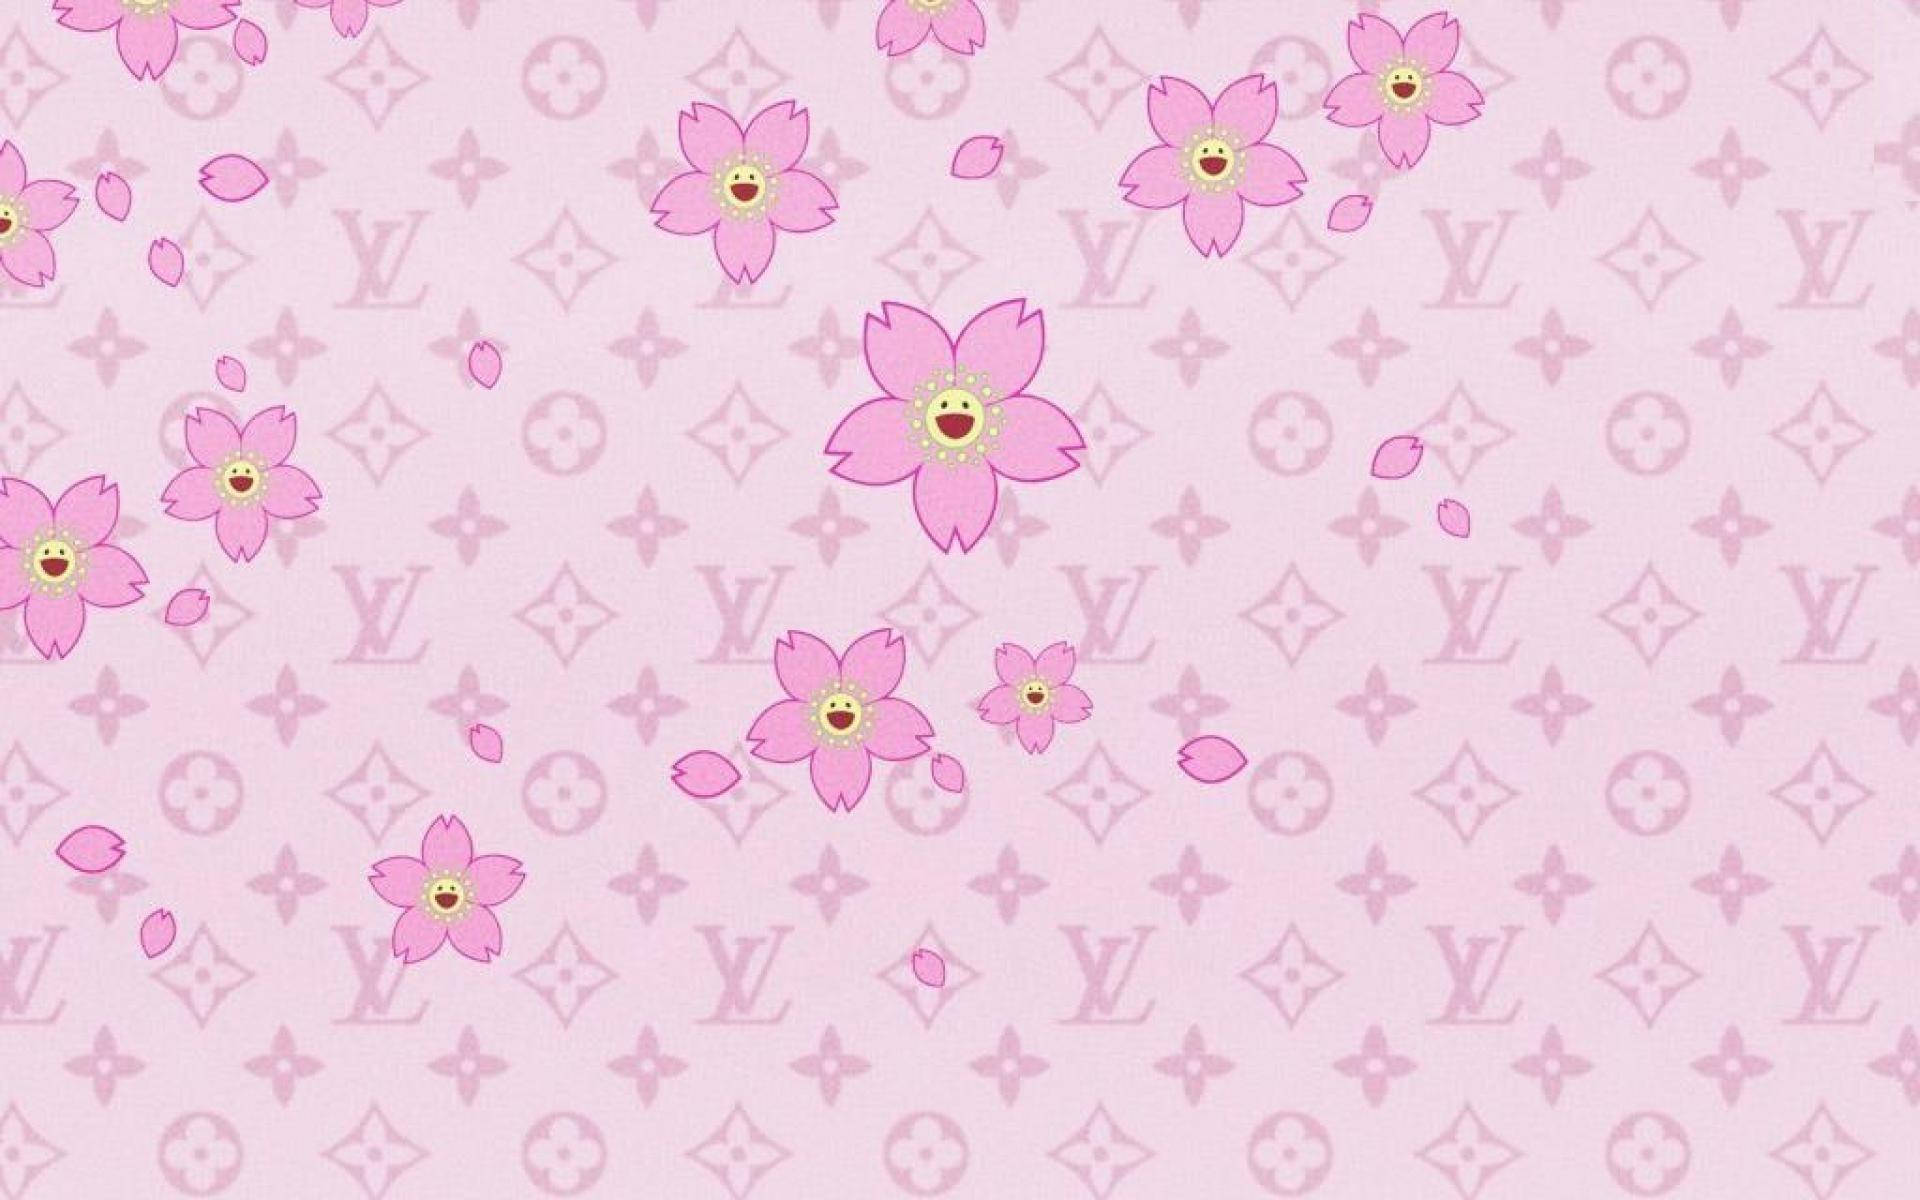 Baddie Aesthetic Pink Flowers Wallpaper